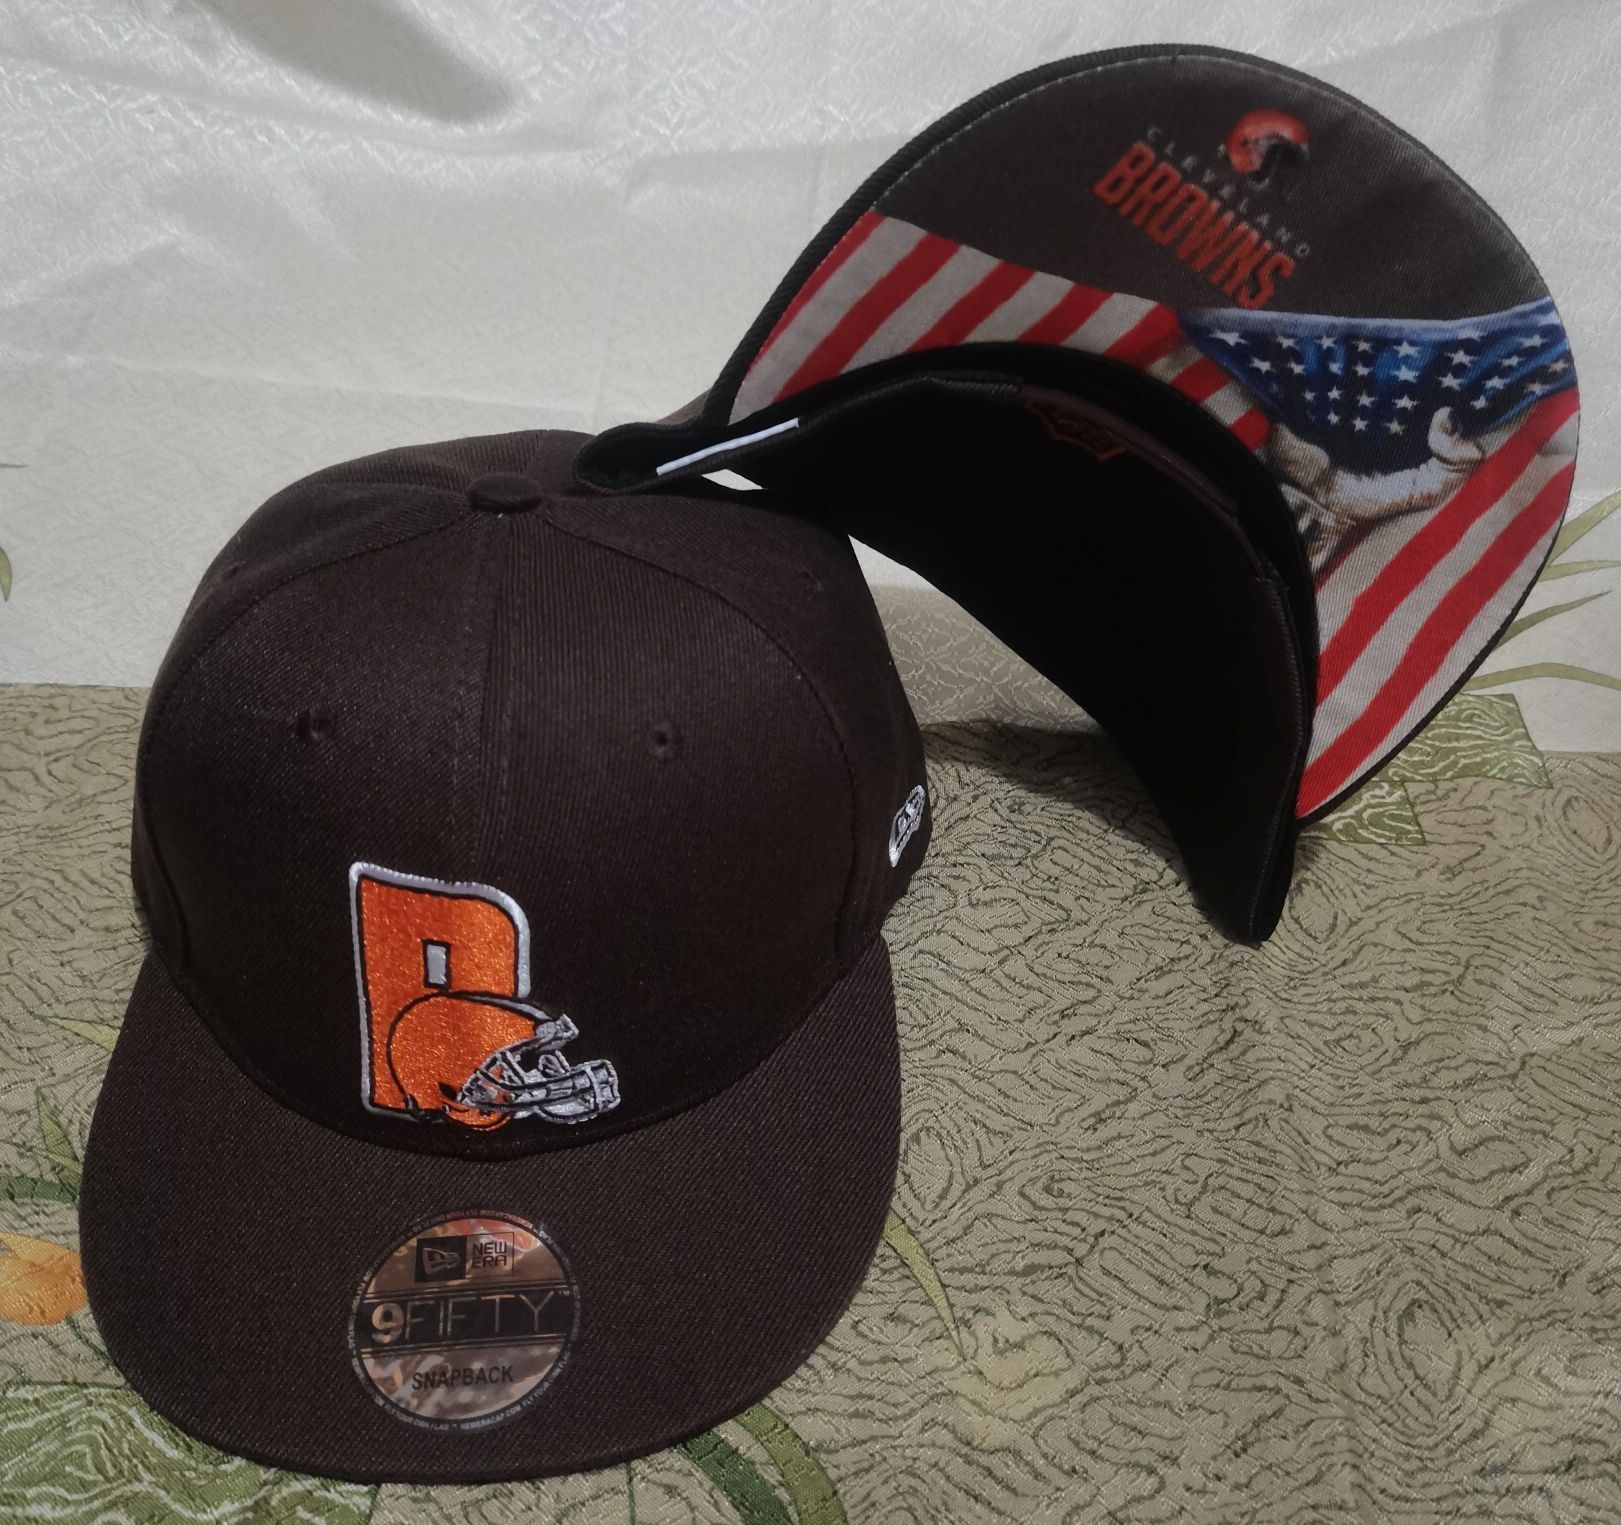 2021 NFL Cleveland Browns #1 hat